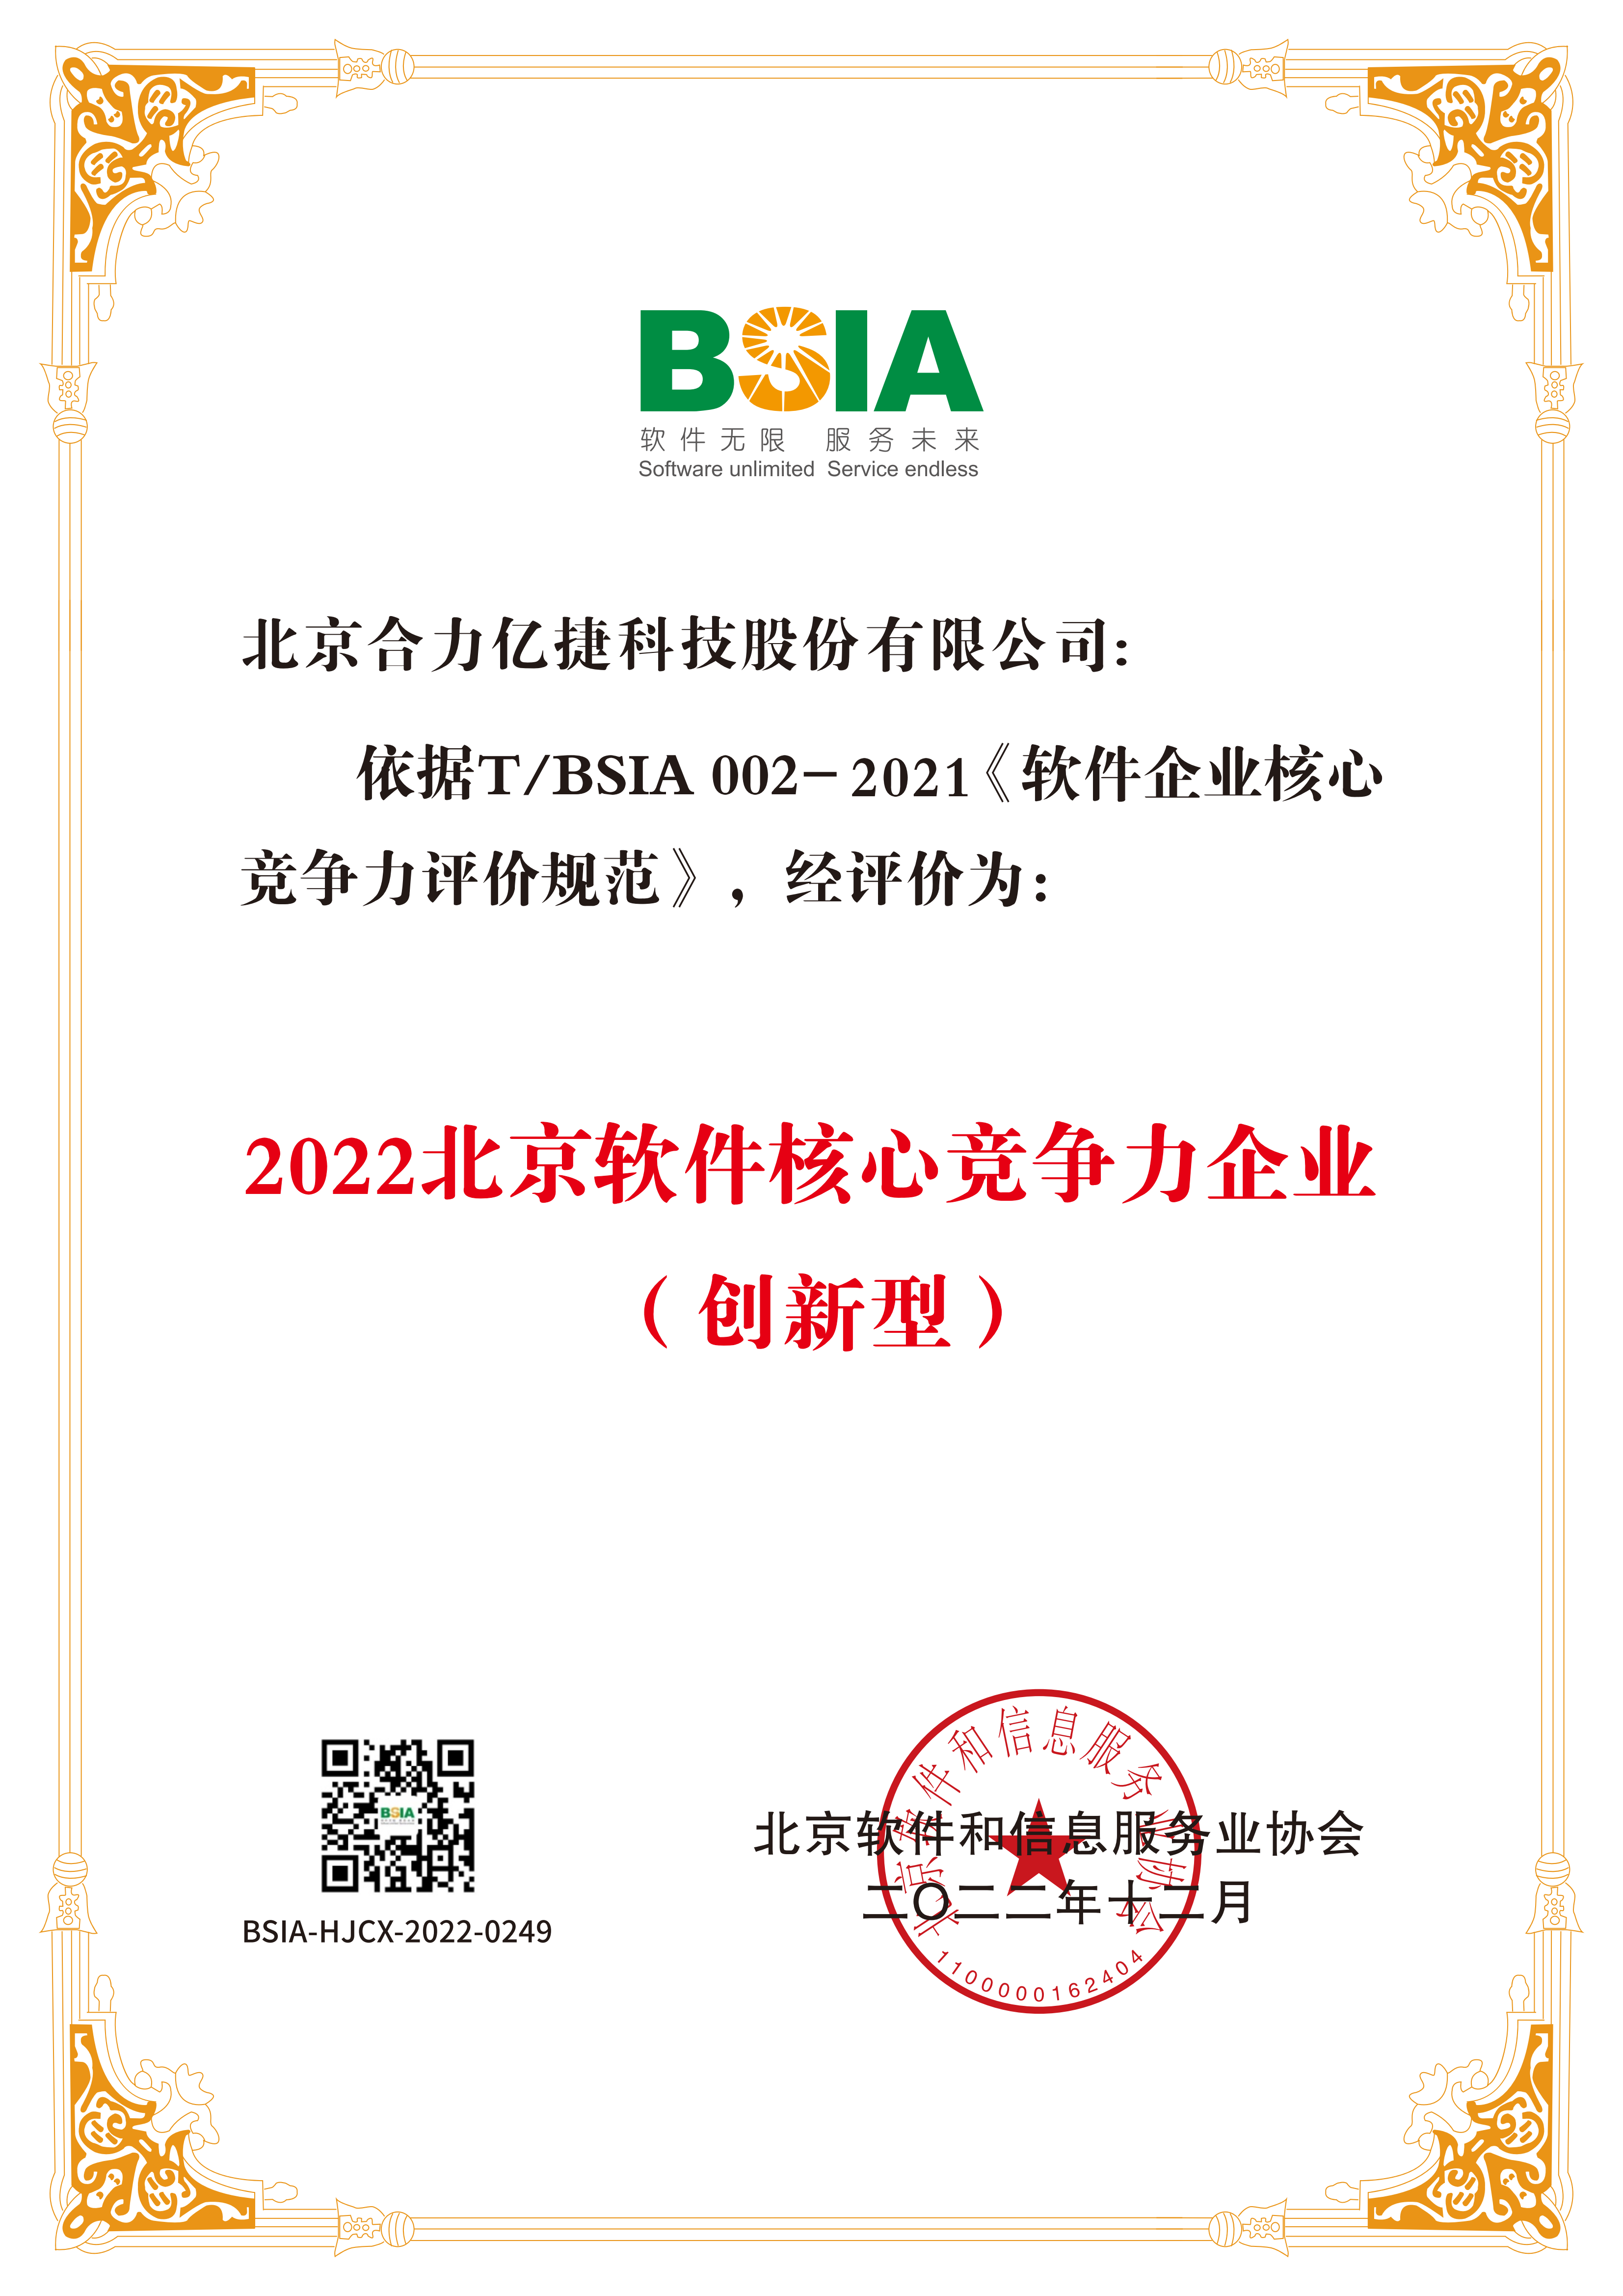 2022北京软件企业核心竞争力-证书_00.png